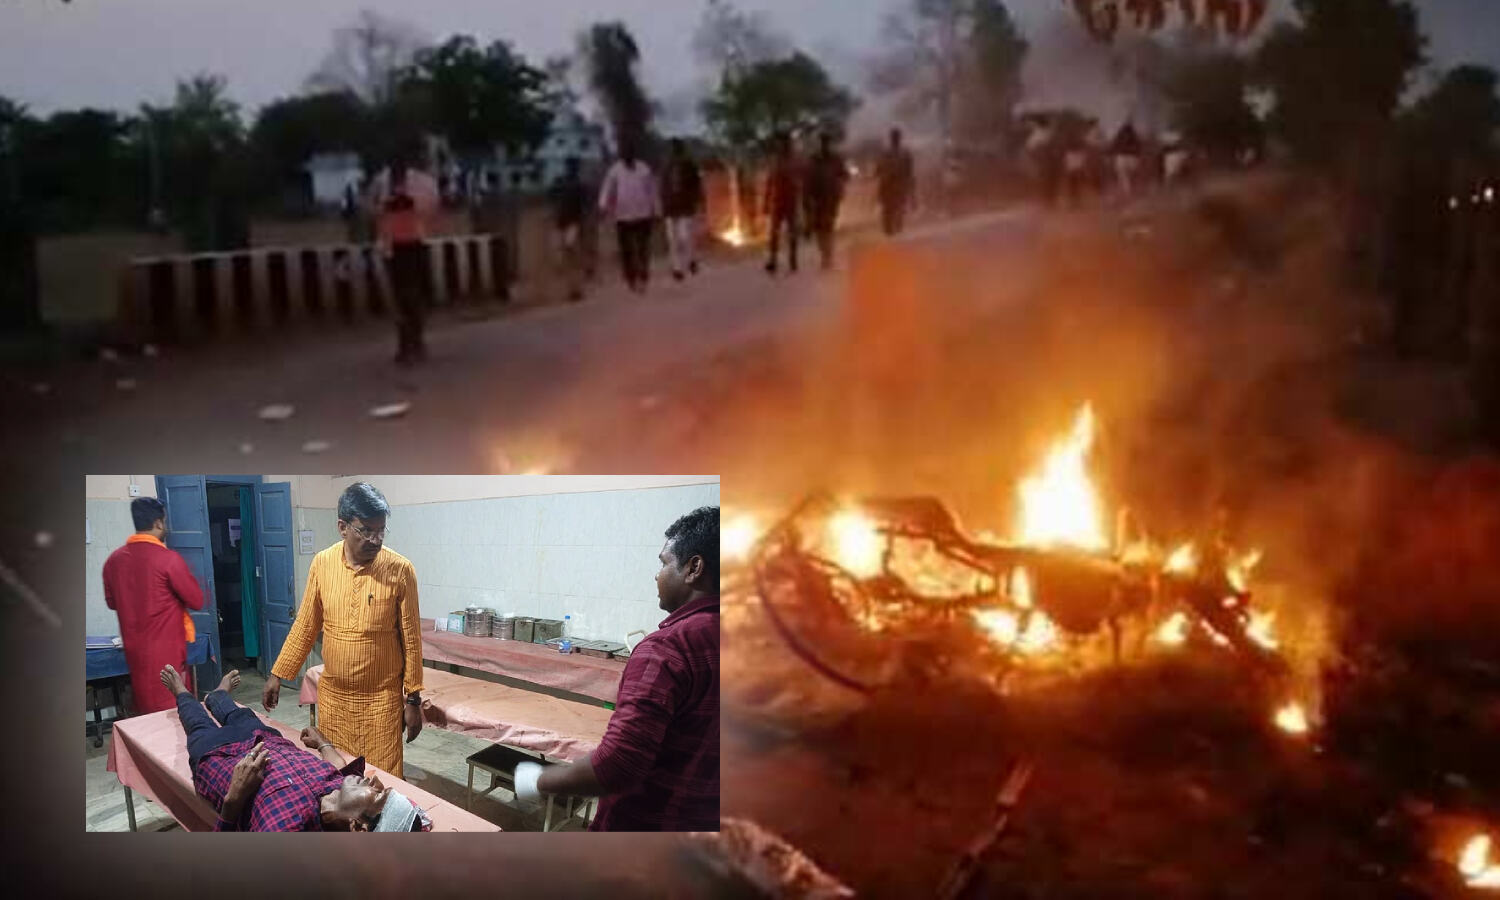 Lohardaga News : झारखंड के लोहरदगा में रामनवमी के मेले में हिंसा और पथराव, इलाके में धारा 144 लागू, इंटरनेट सेवाओं पर रोक